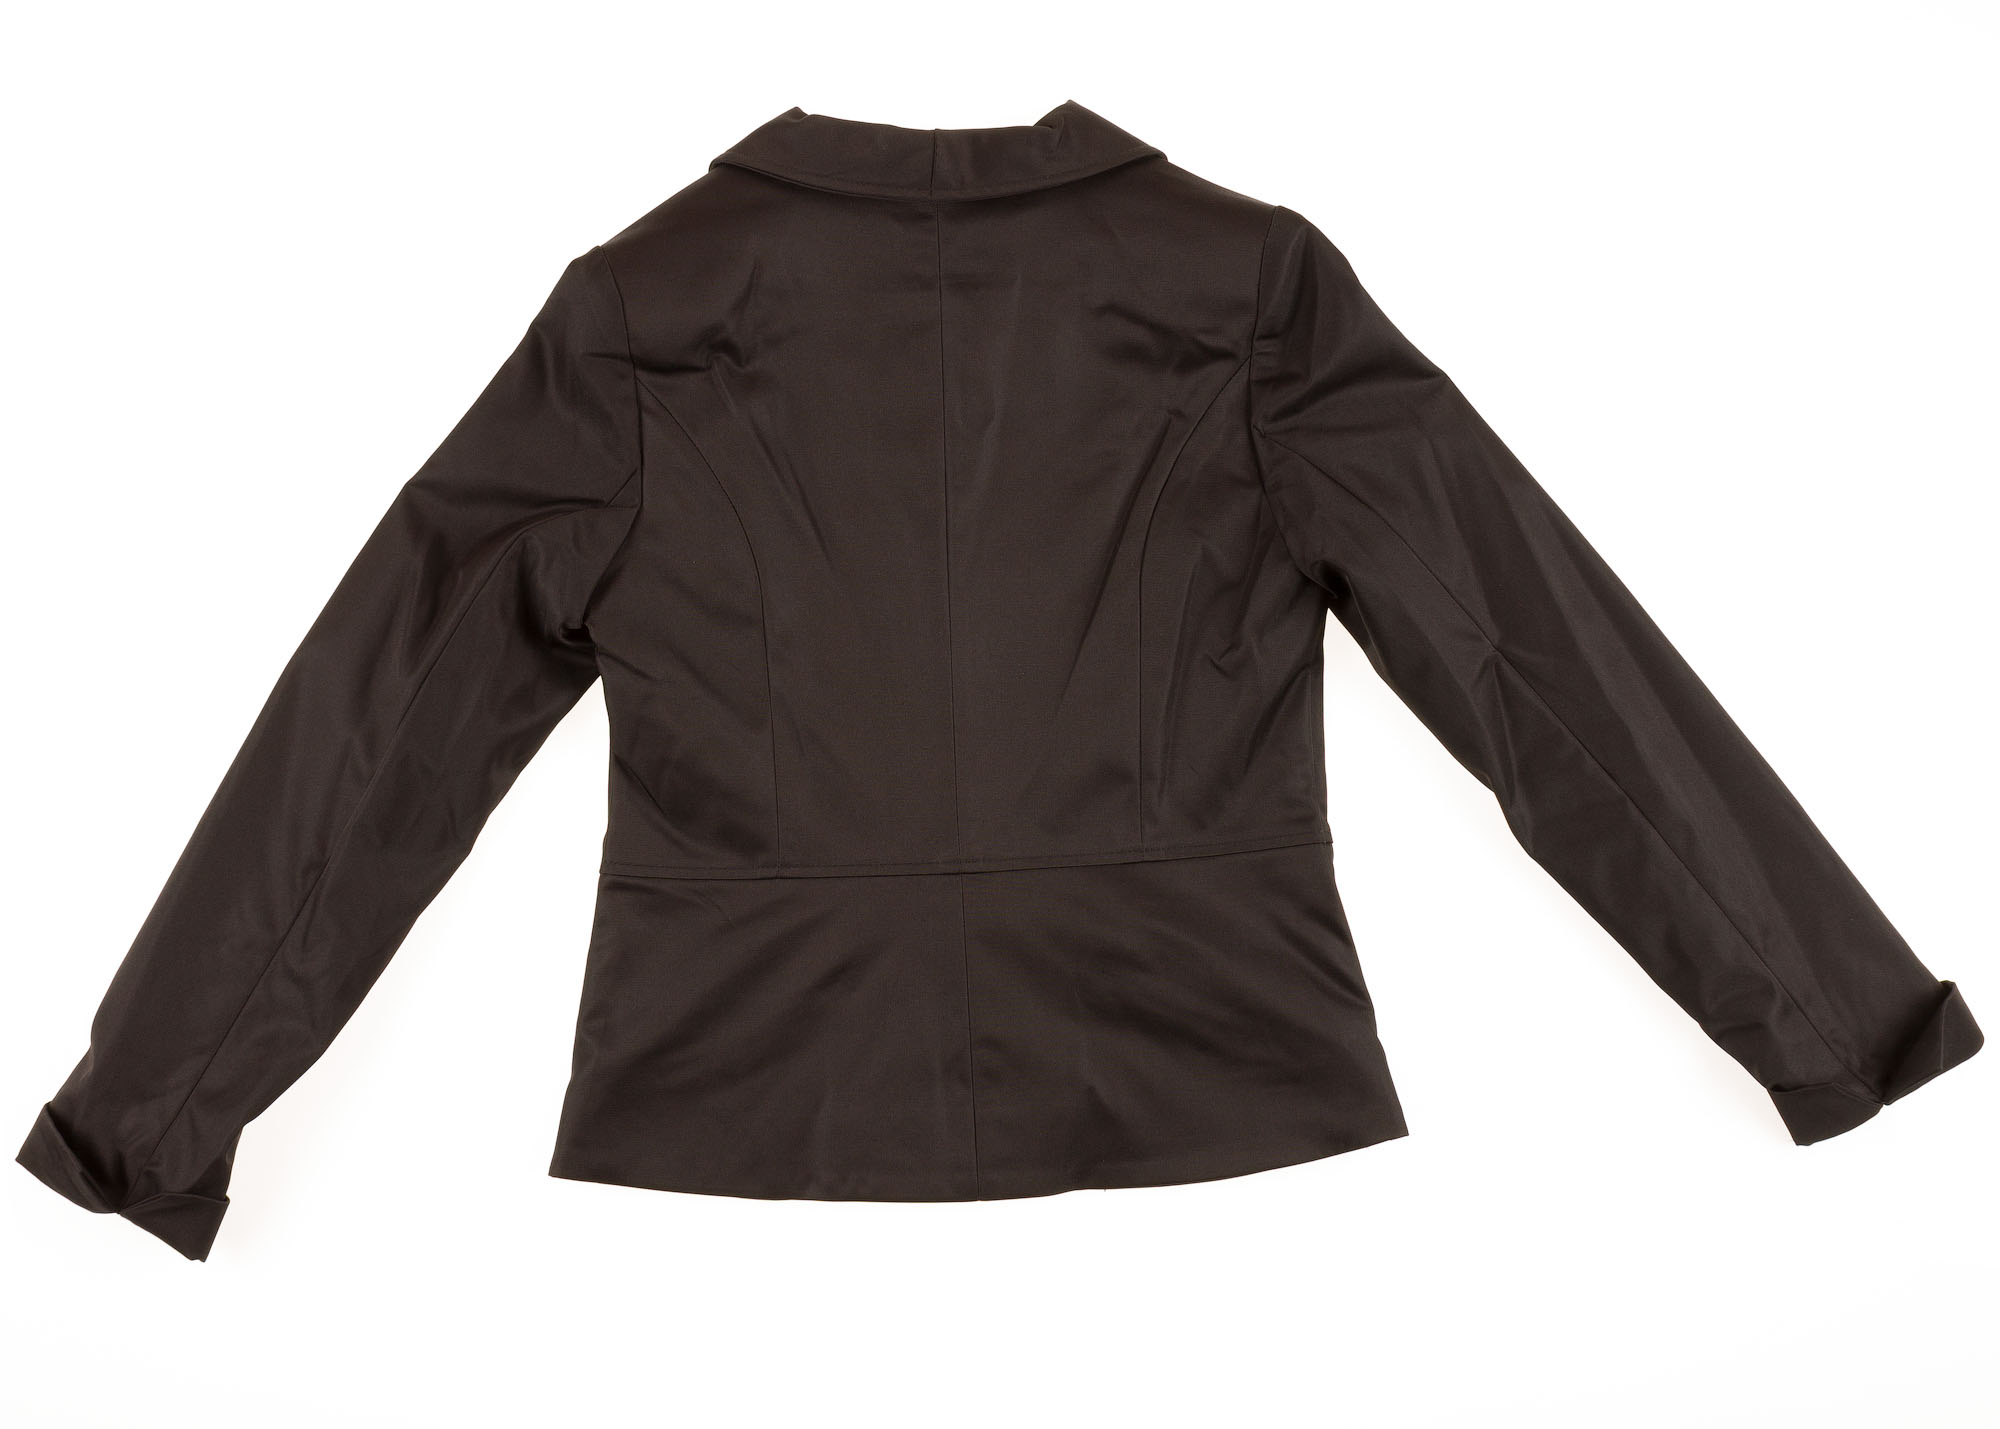 Піджак шкільний для дівчинки SUZIE Стефані мемори-котон чорний ЖК-12605 - розміри